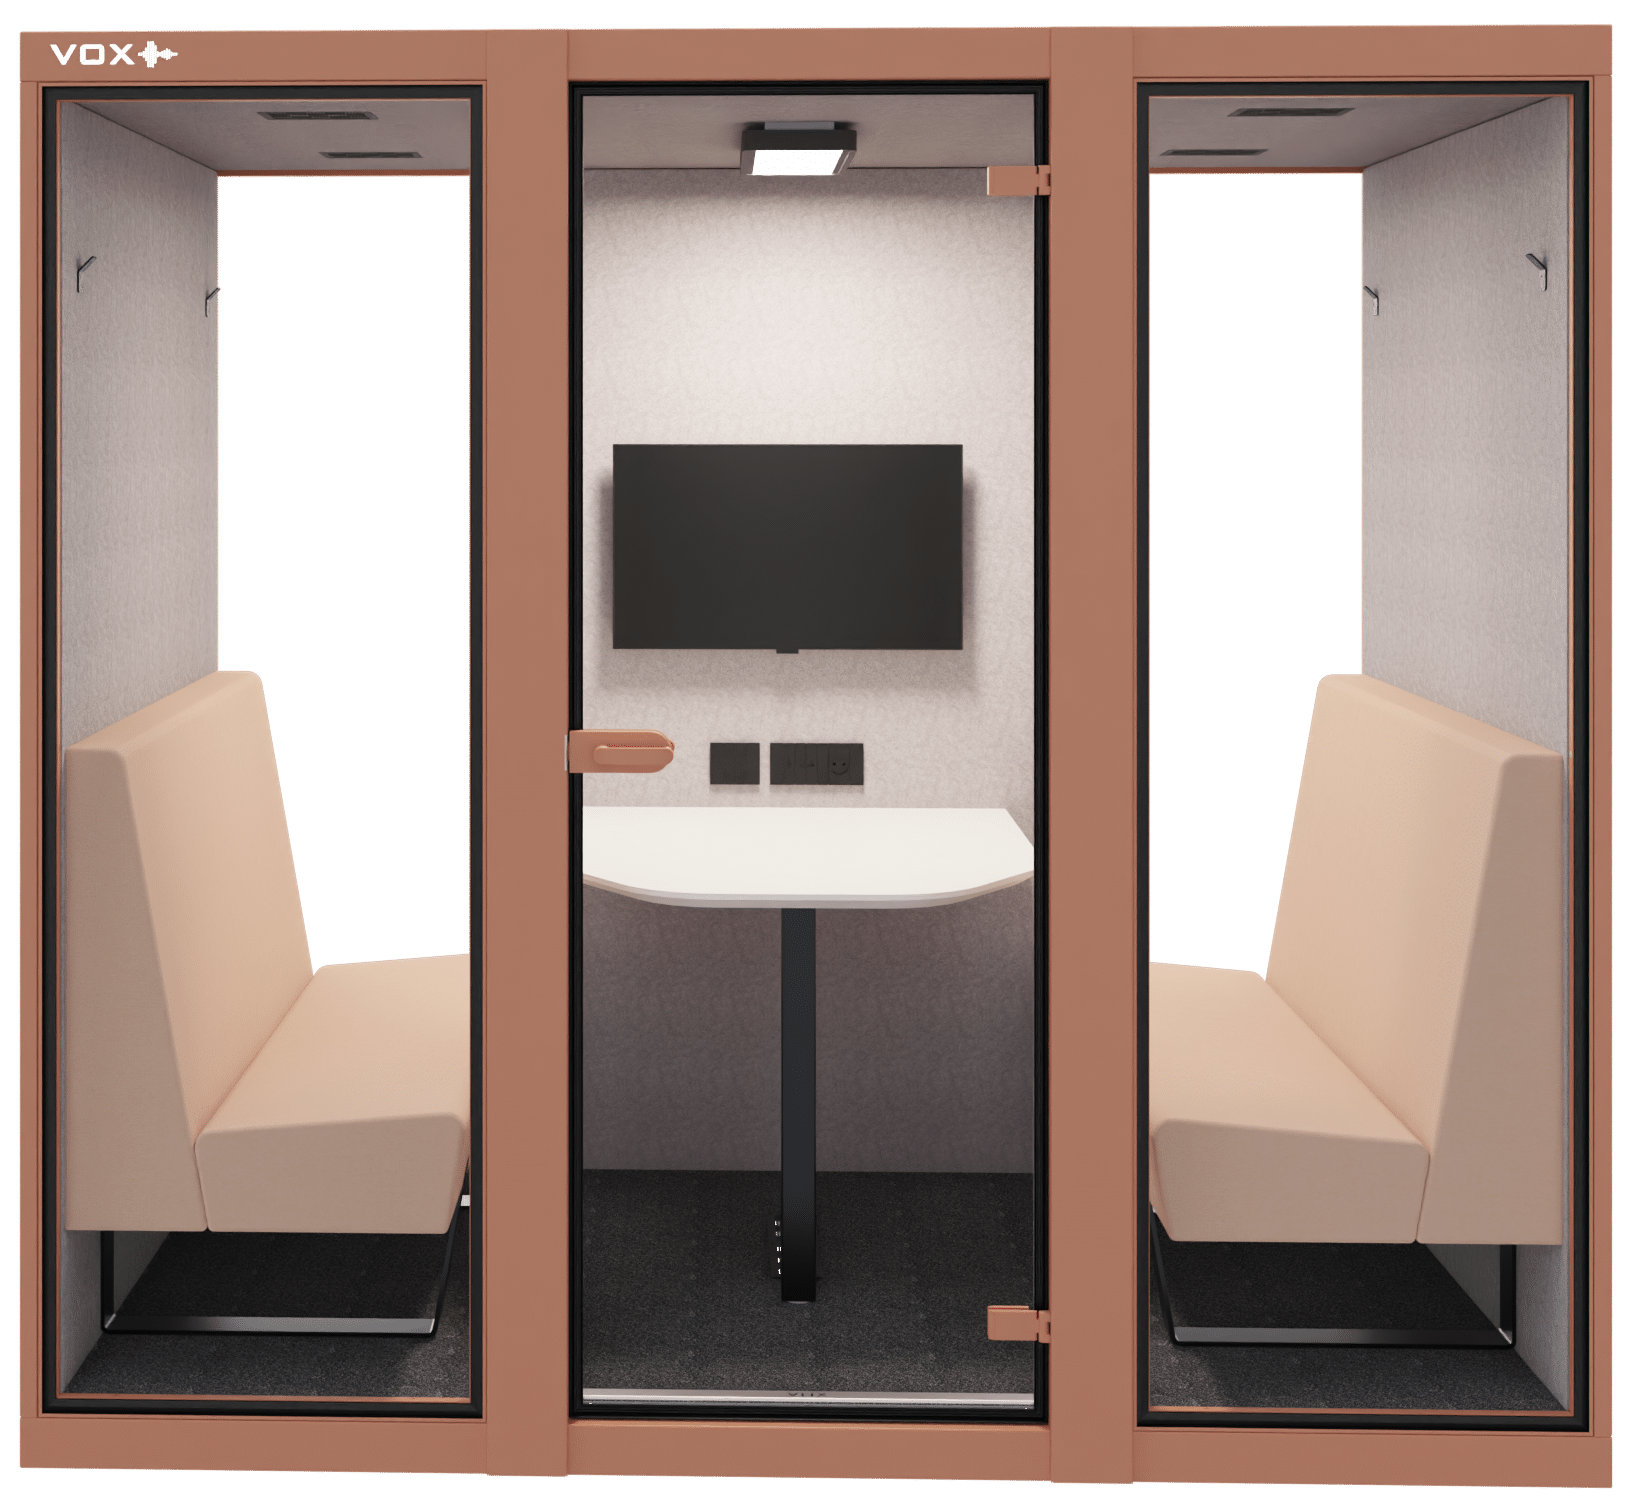 akoestische cabine met daarin treinbanken in een bruinroze tint, in het midden staat een tafel met daarboven een tv-scherm.